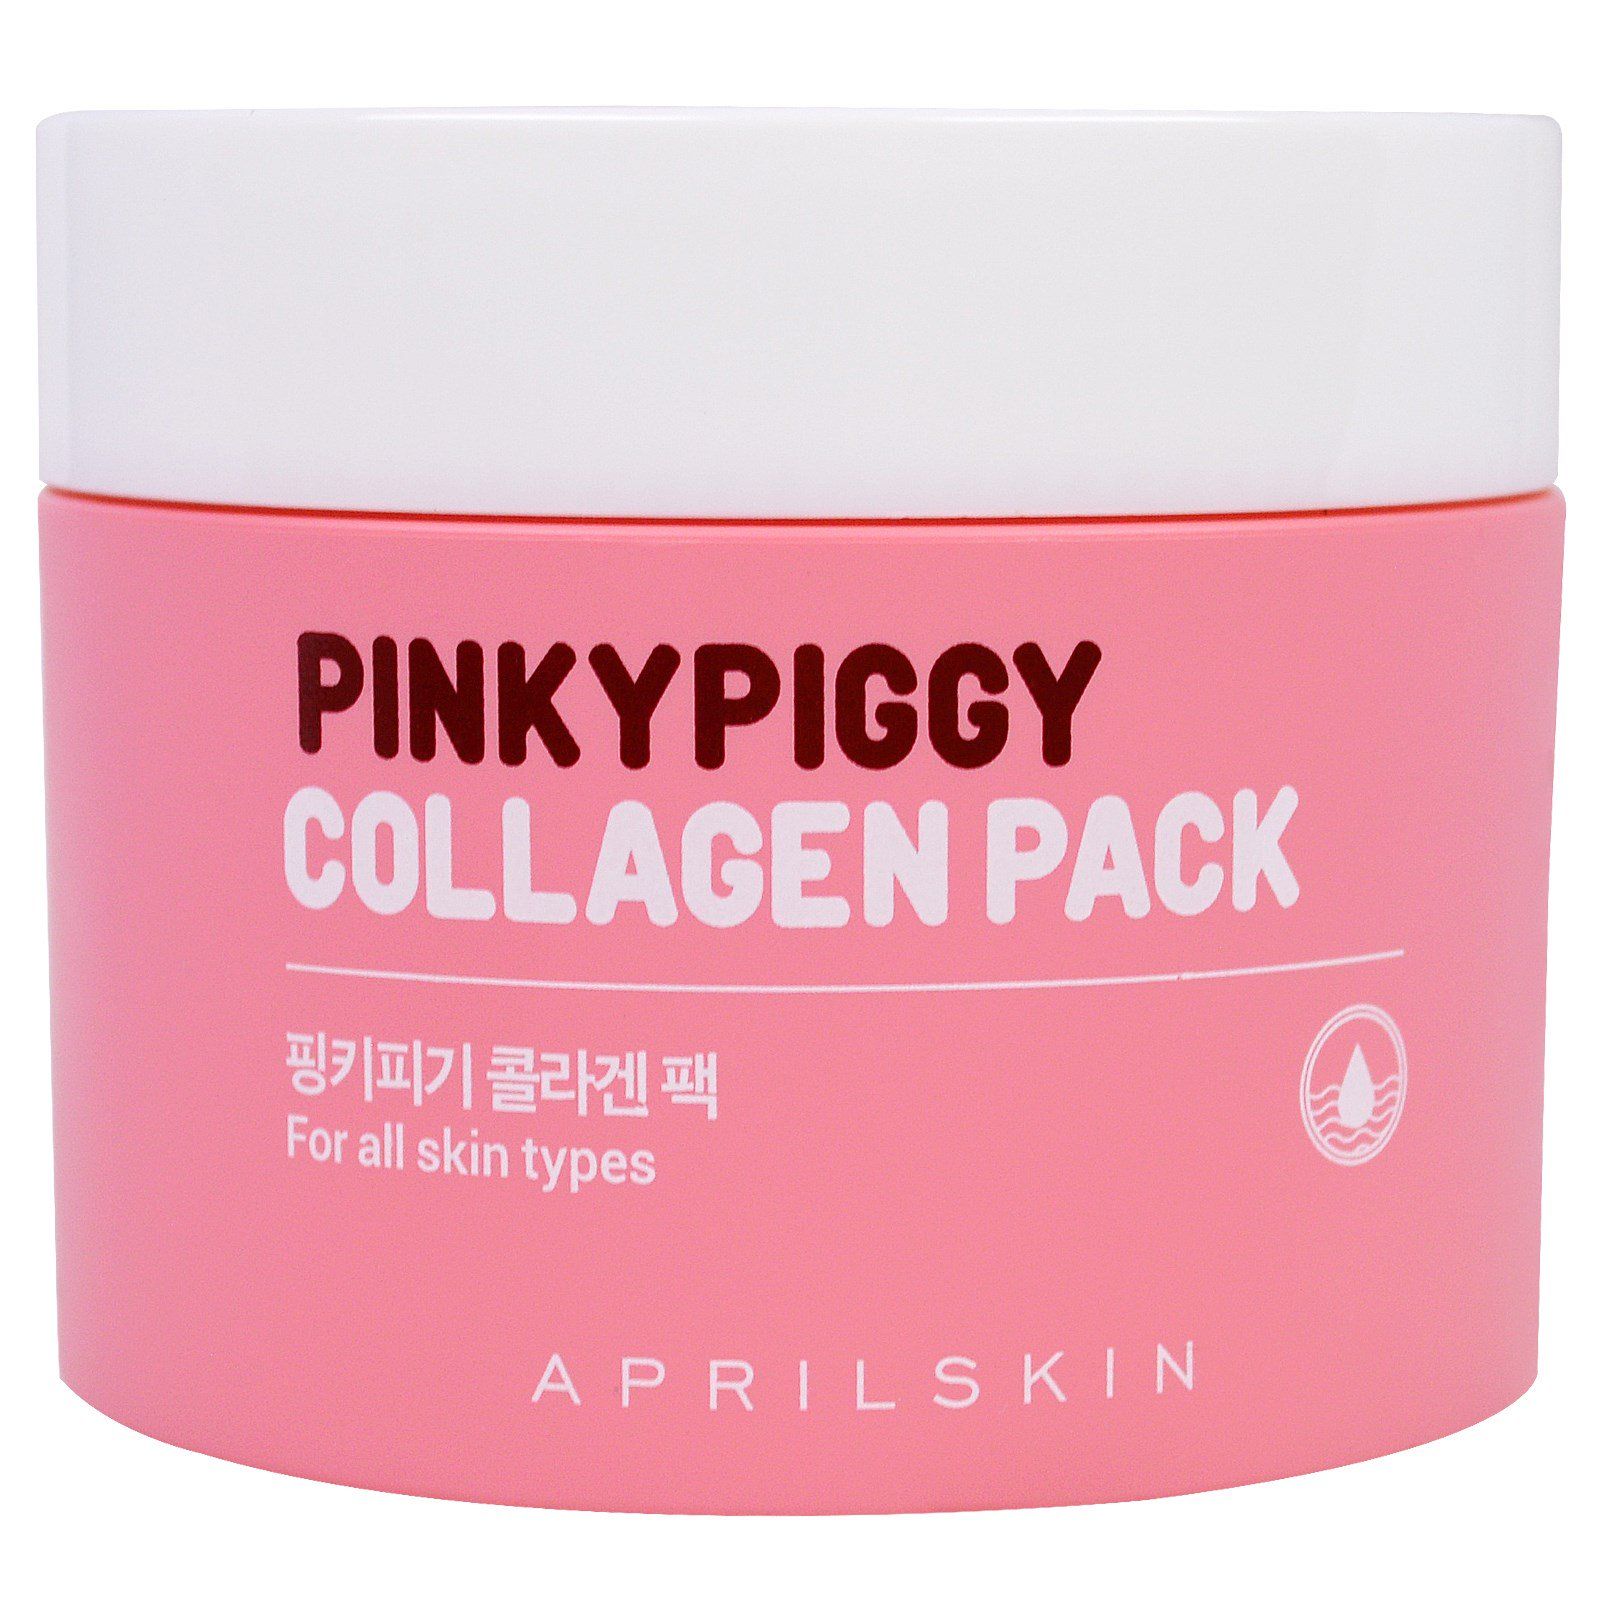 Косметика на основе коллагена. April Skin косметика. Пигги Пинк корейский магазин. Смываемые корейские маски